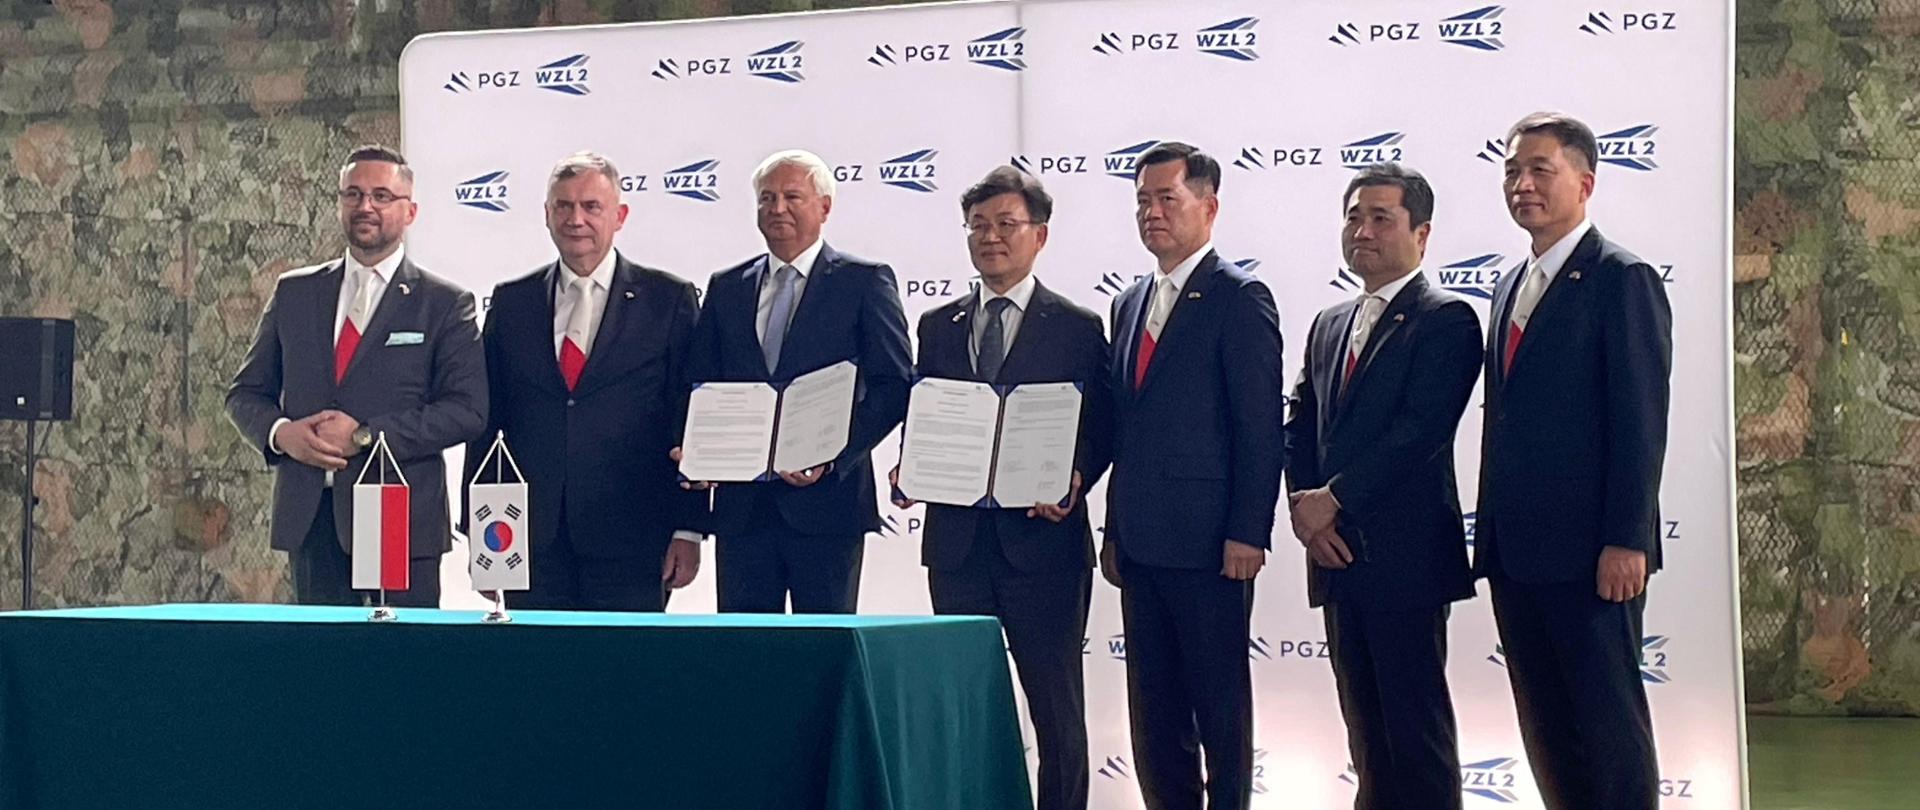 Za stołem stoją przedstawiciele strony polskiej oraz koreańskiej. Dwóch mężczyzn trzyma w dłoniach dokumenty. Na stole stoją proporczyki - polski i południowokoreański. W tle ścianka z logotypami PGZ oraz WZL 2. 